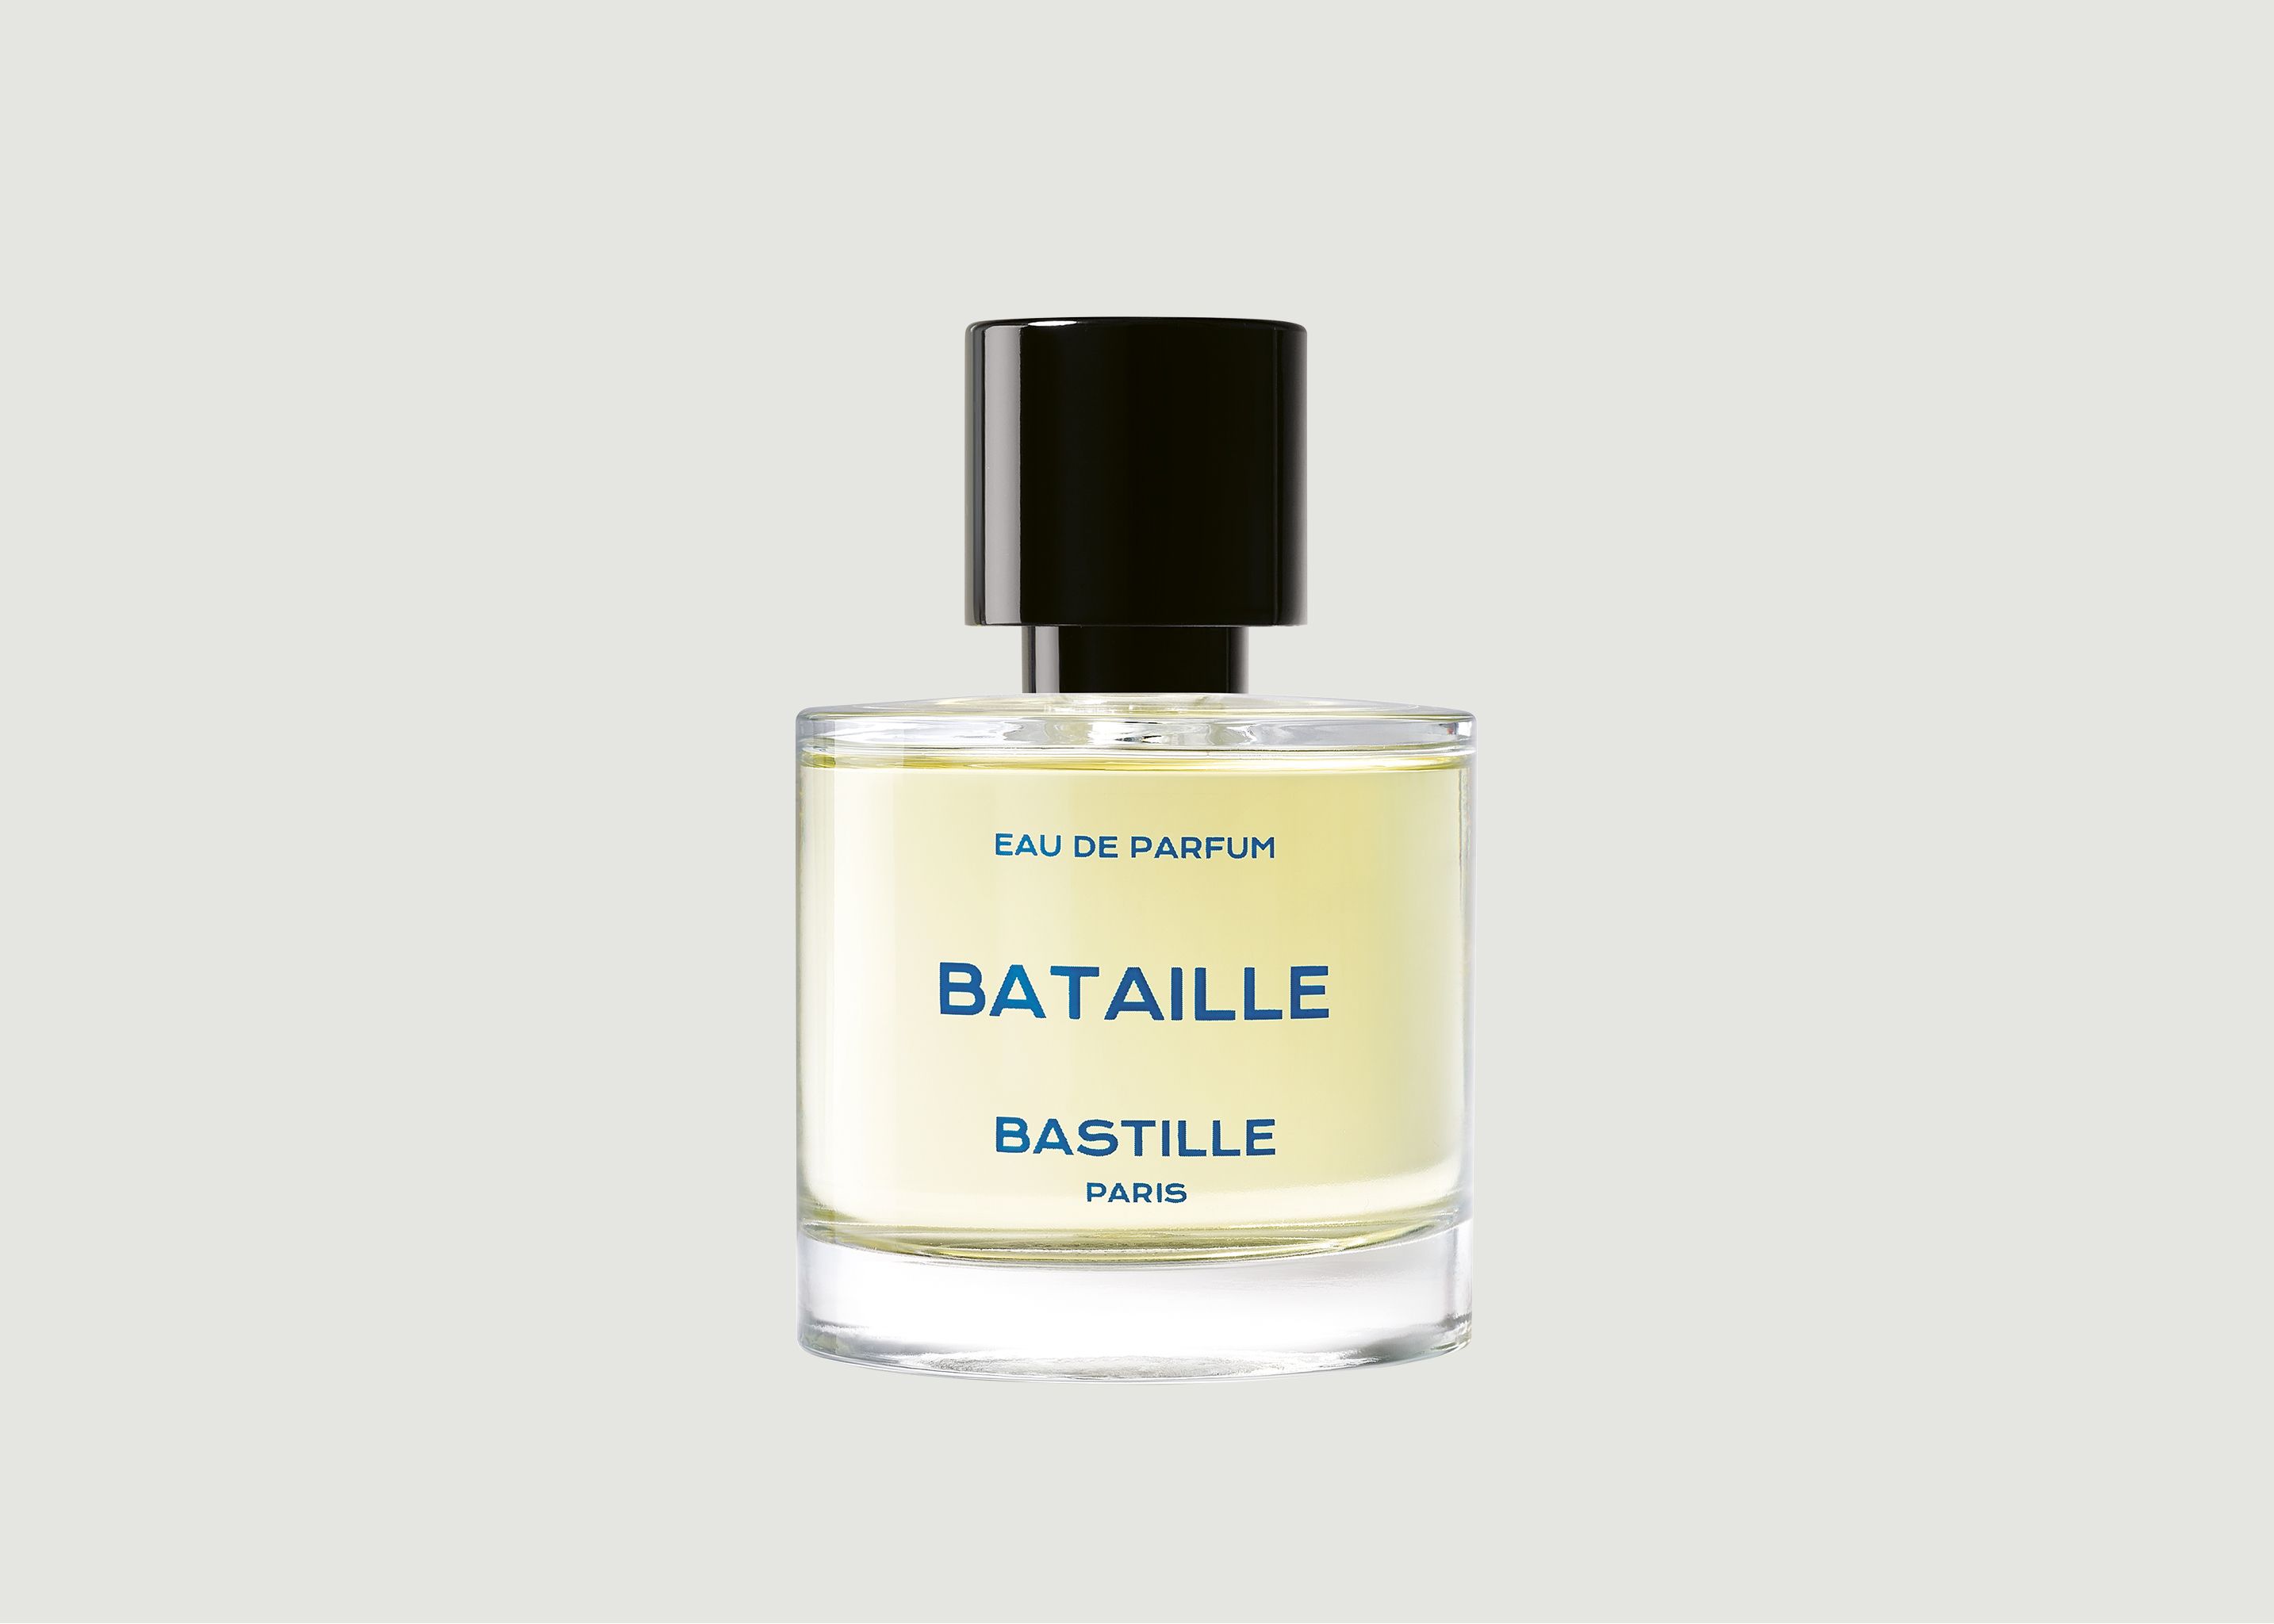 Eau de parfum Bataille 50 mL - Bastille Paris